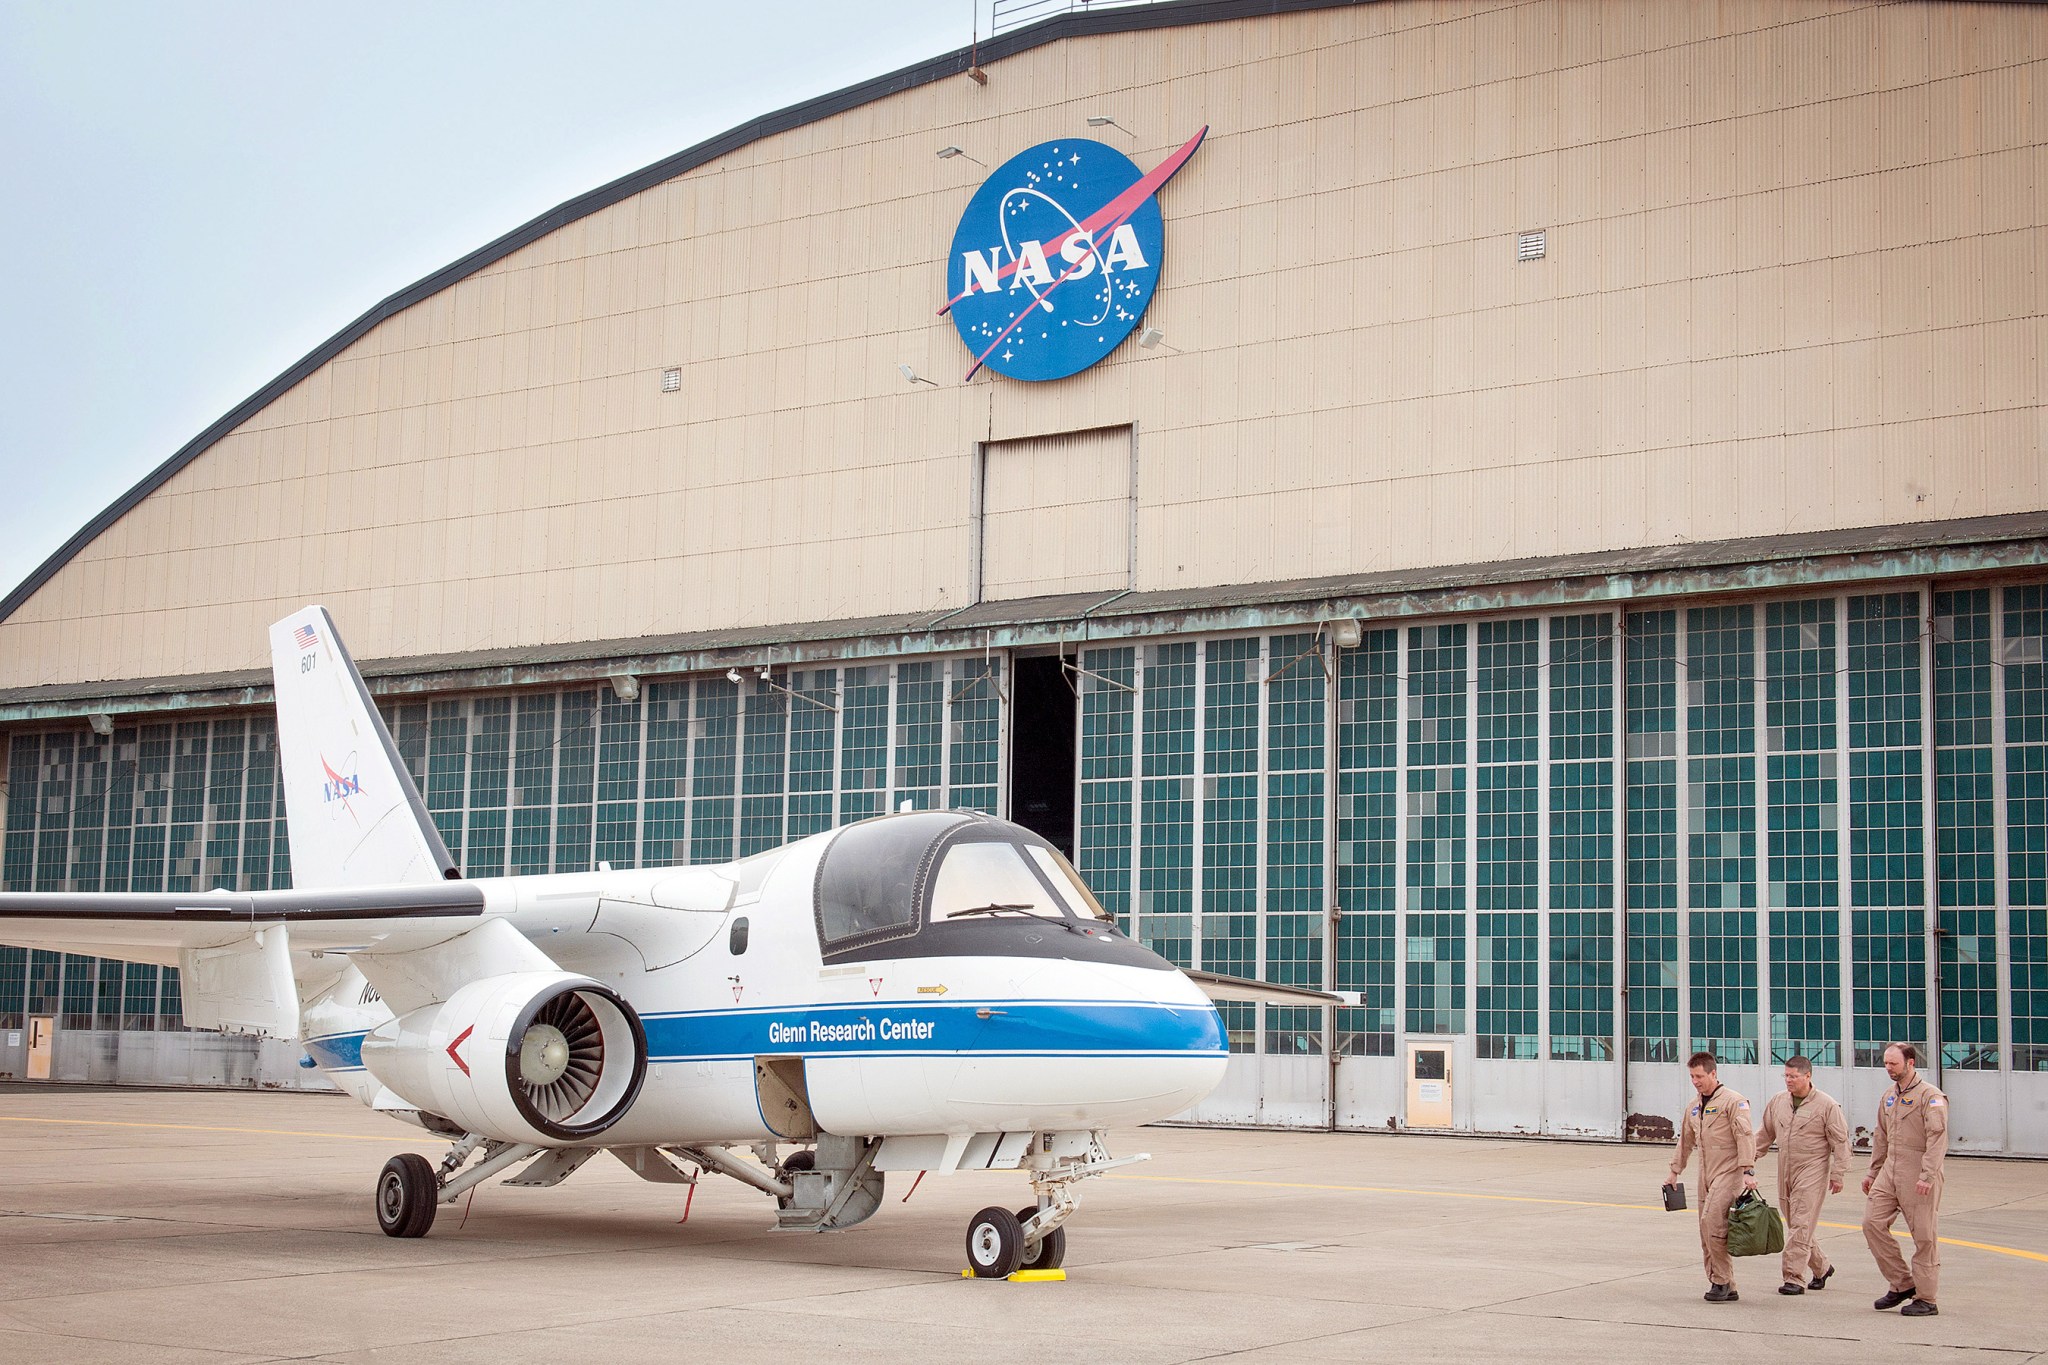 NASA's S-3 Viking research aircraft outside the NASA hangar.